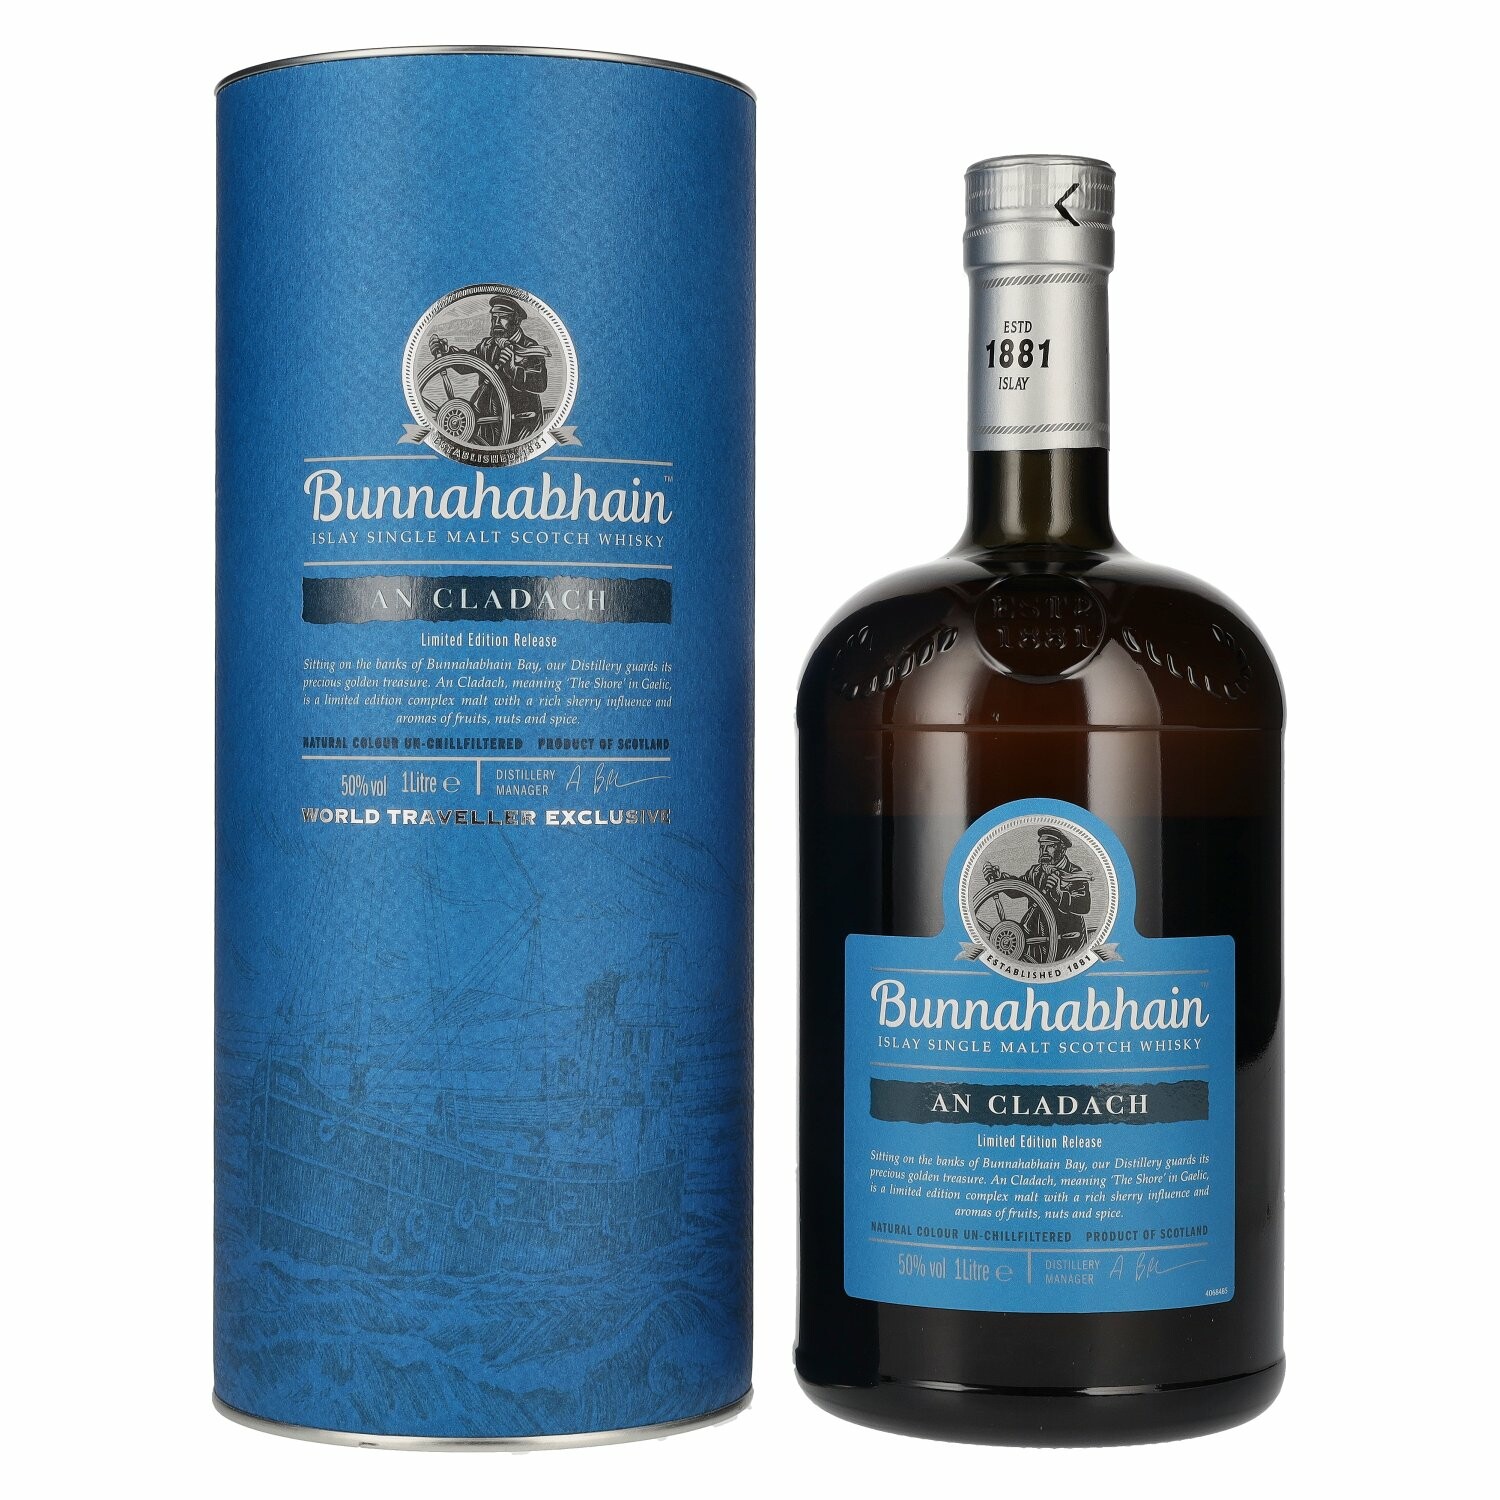 Bunnahabhain AN CLADACH Islay Single Malt Scotch Whisky 50% Vol. 1l in Giftbox